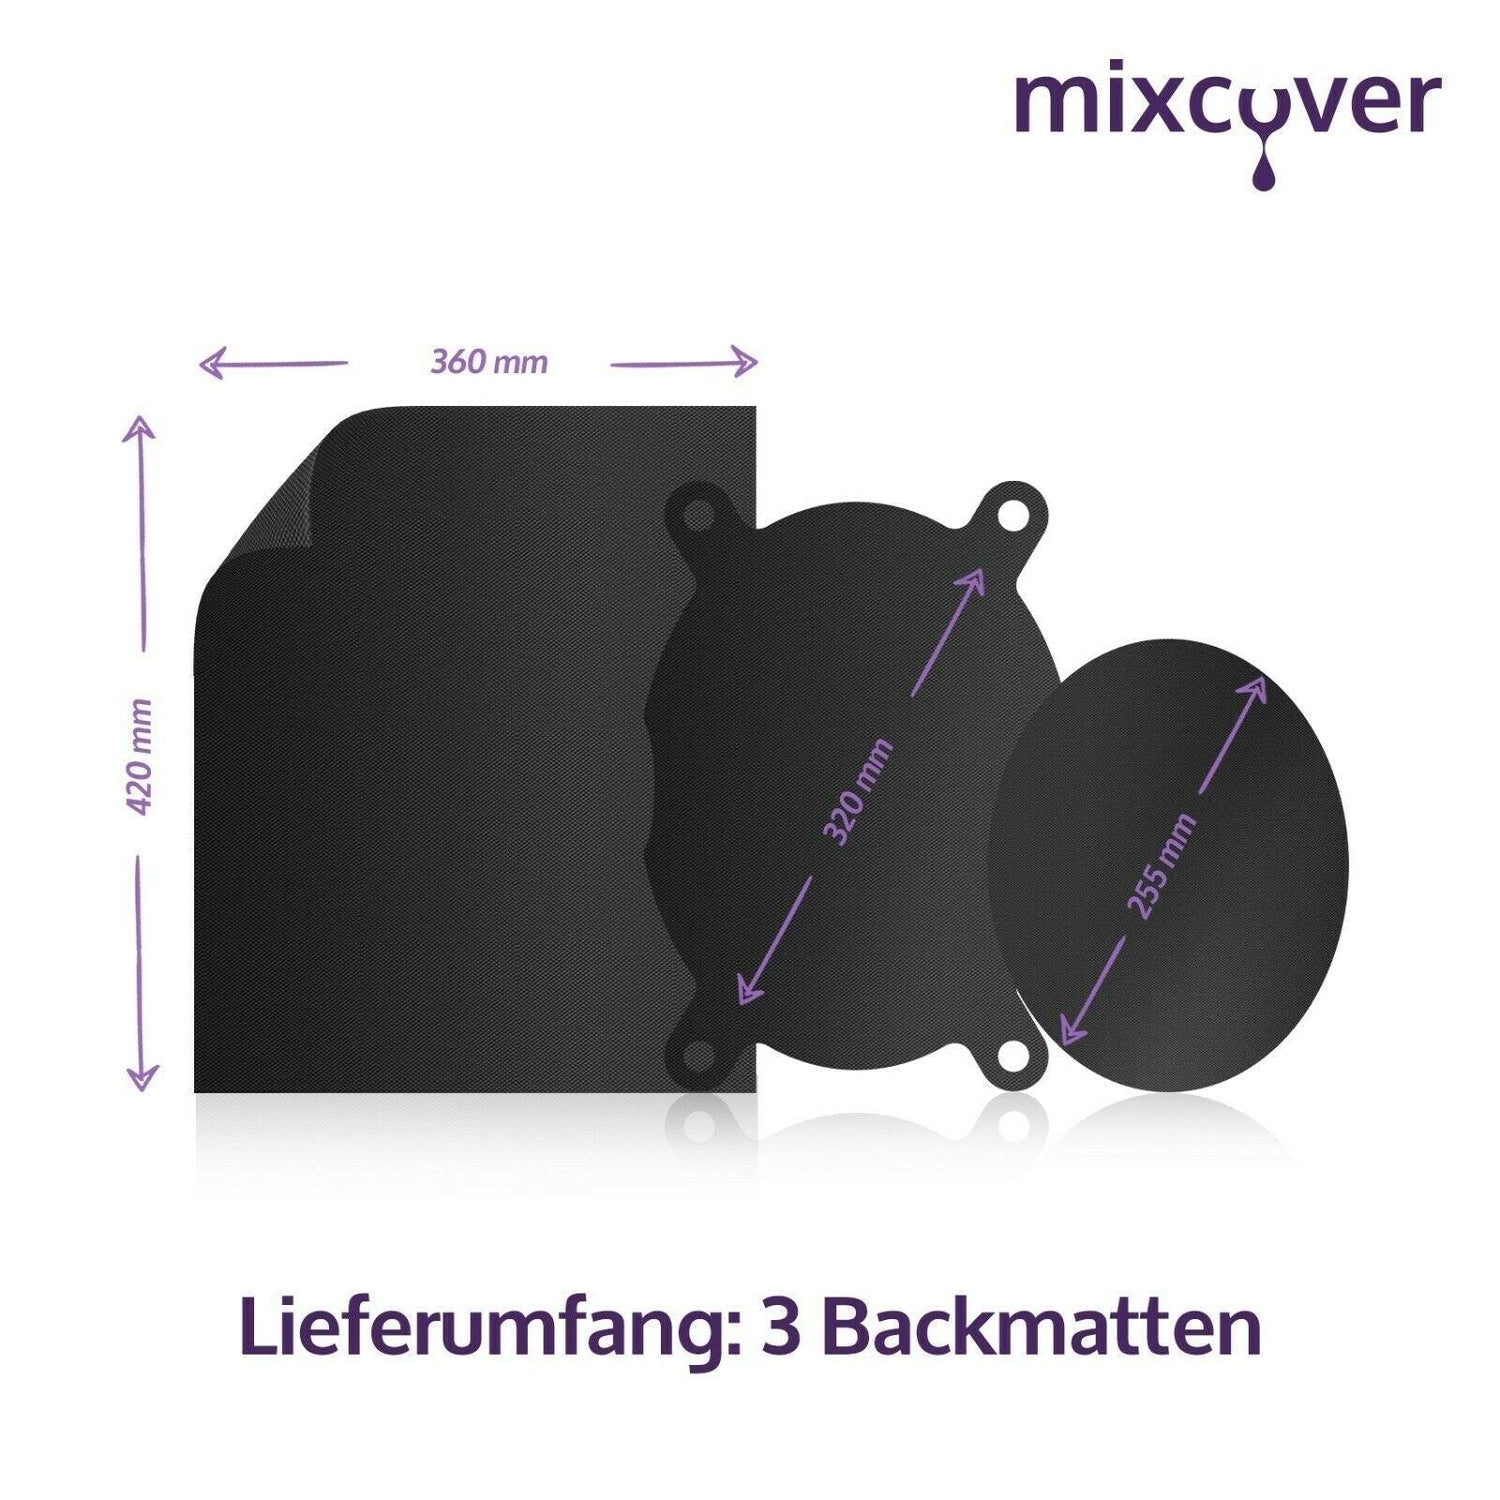 B-Ware: Dauerbackfolie - reusable Backpapier Tropfschutz für Bosch Cookit - Mixcover - Mixcover